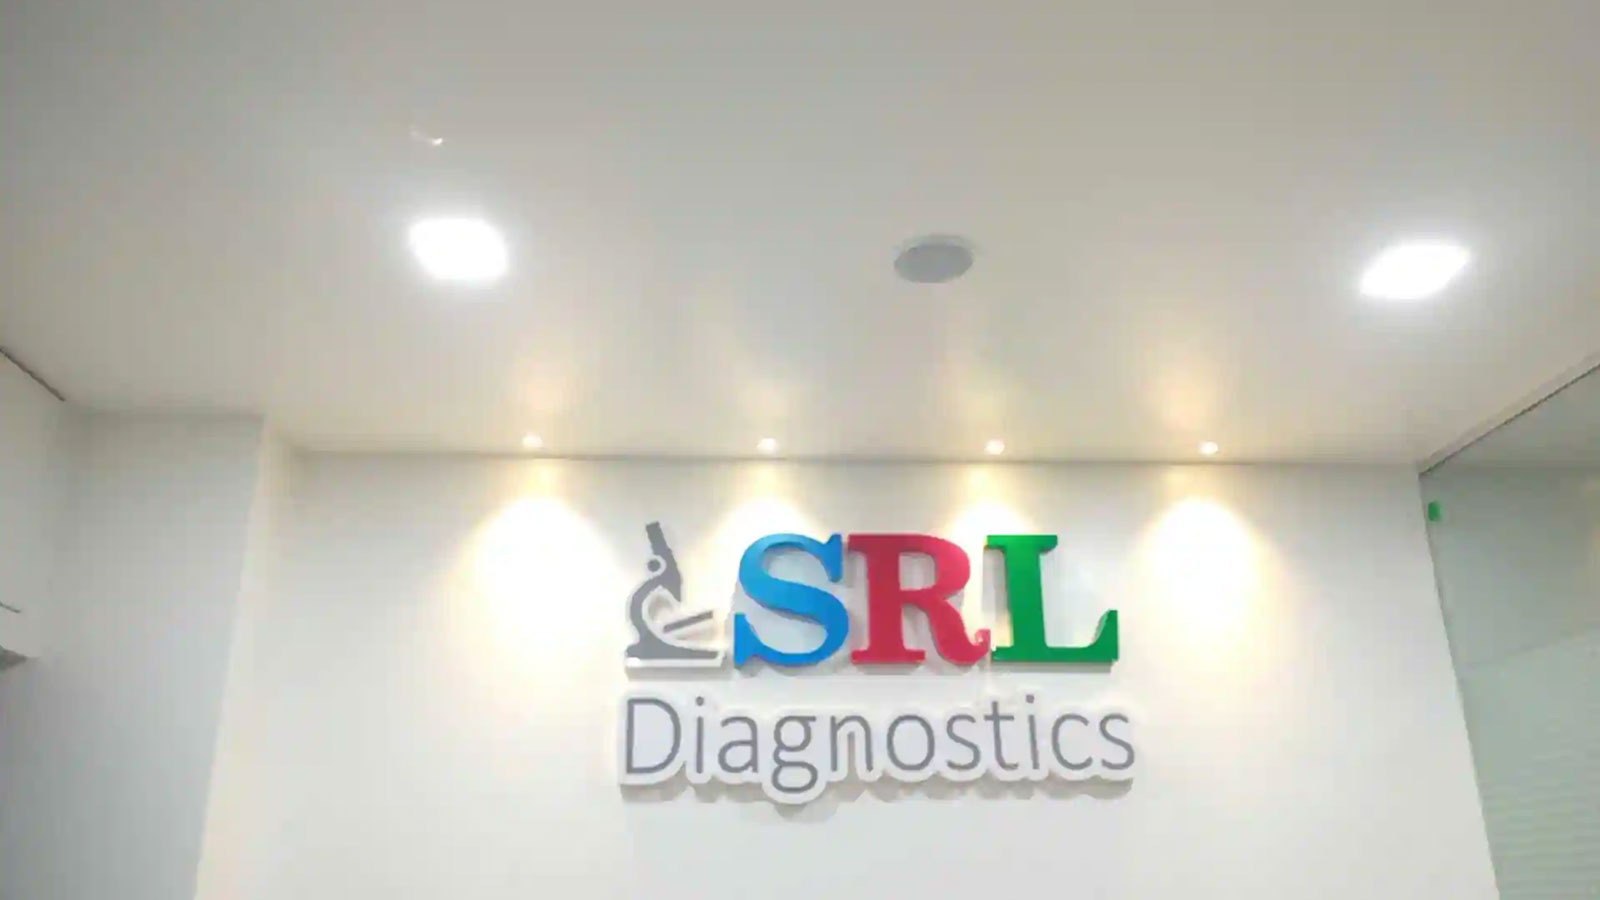 SRL Diagnostics in Durgapura,Jaipur - Best Diagnostic Centres in Jaipur -  Justdial